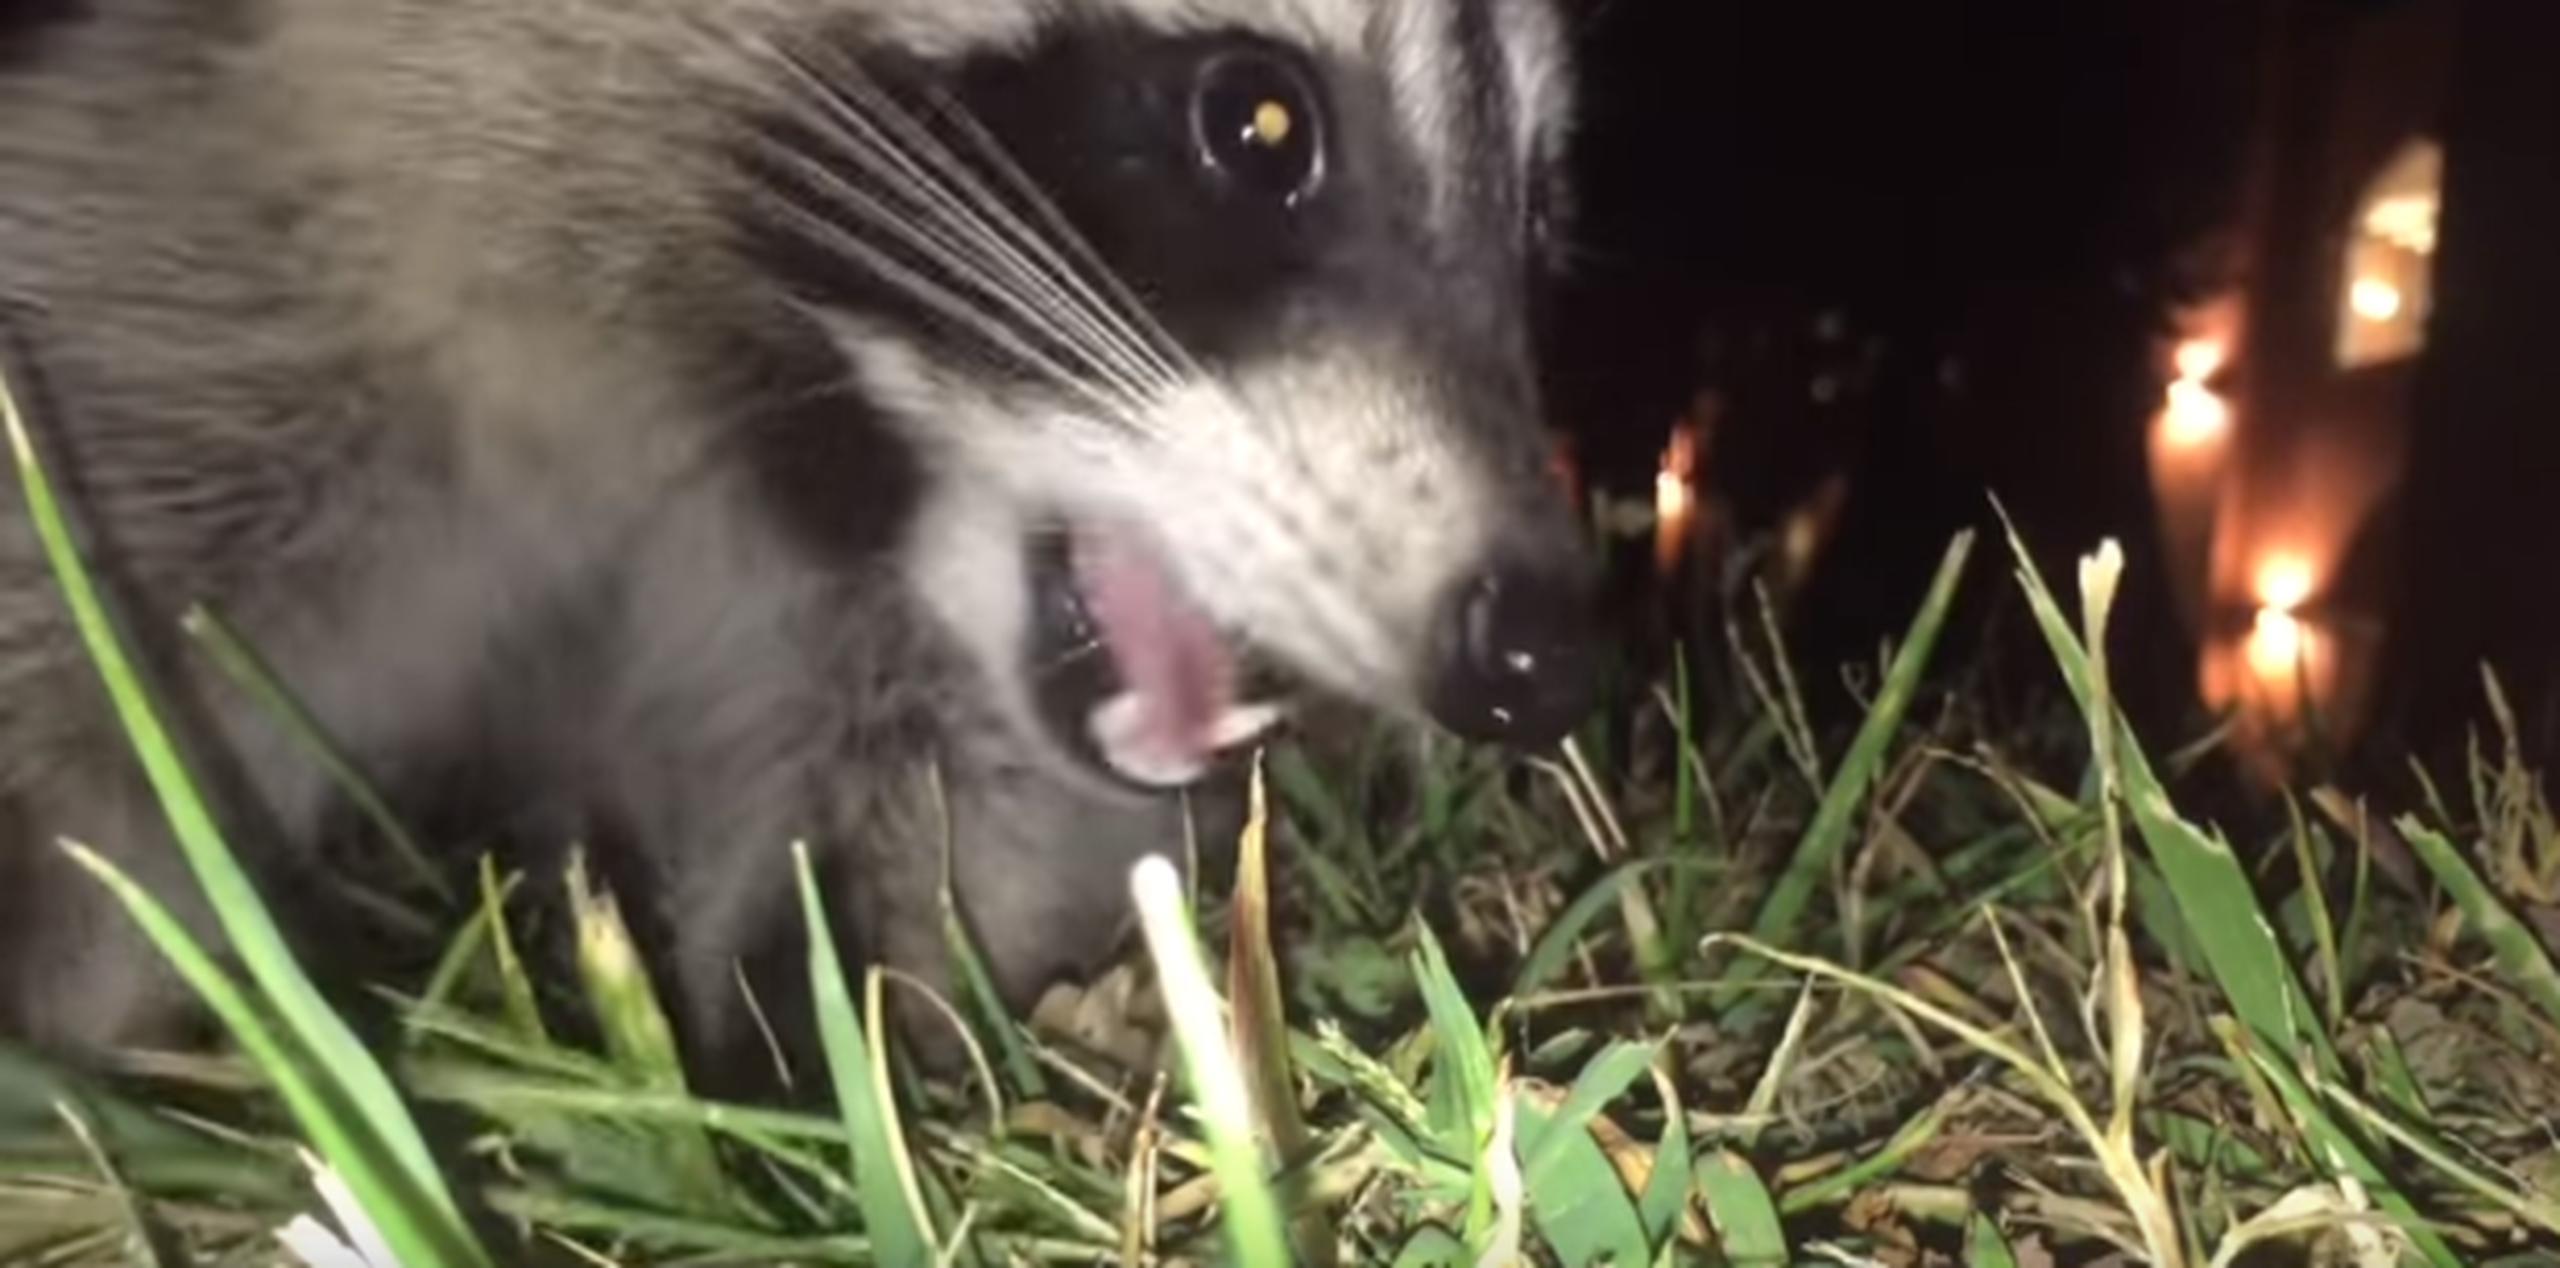 En el vídeo pueden oírse los gritos del dueño del teléfono al perseguir desesperadamente al mapache. (YouTube)